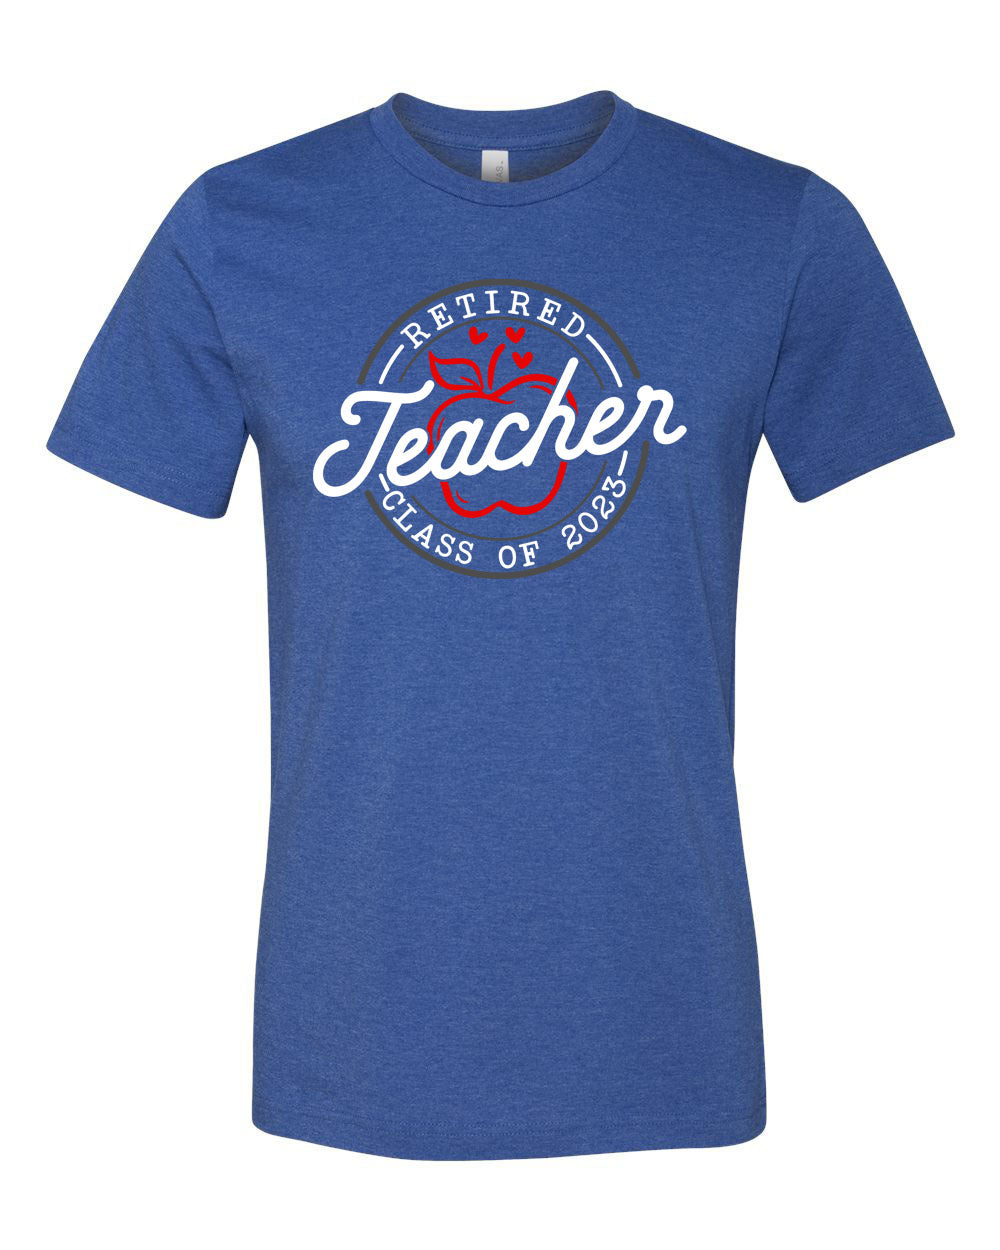 Retired Teacher Design 2 T-Shirt